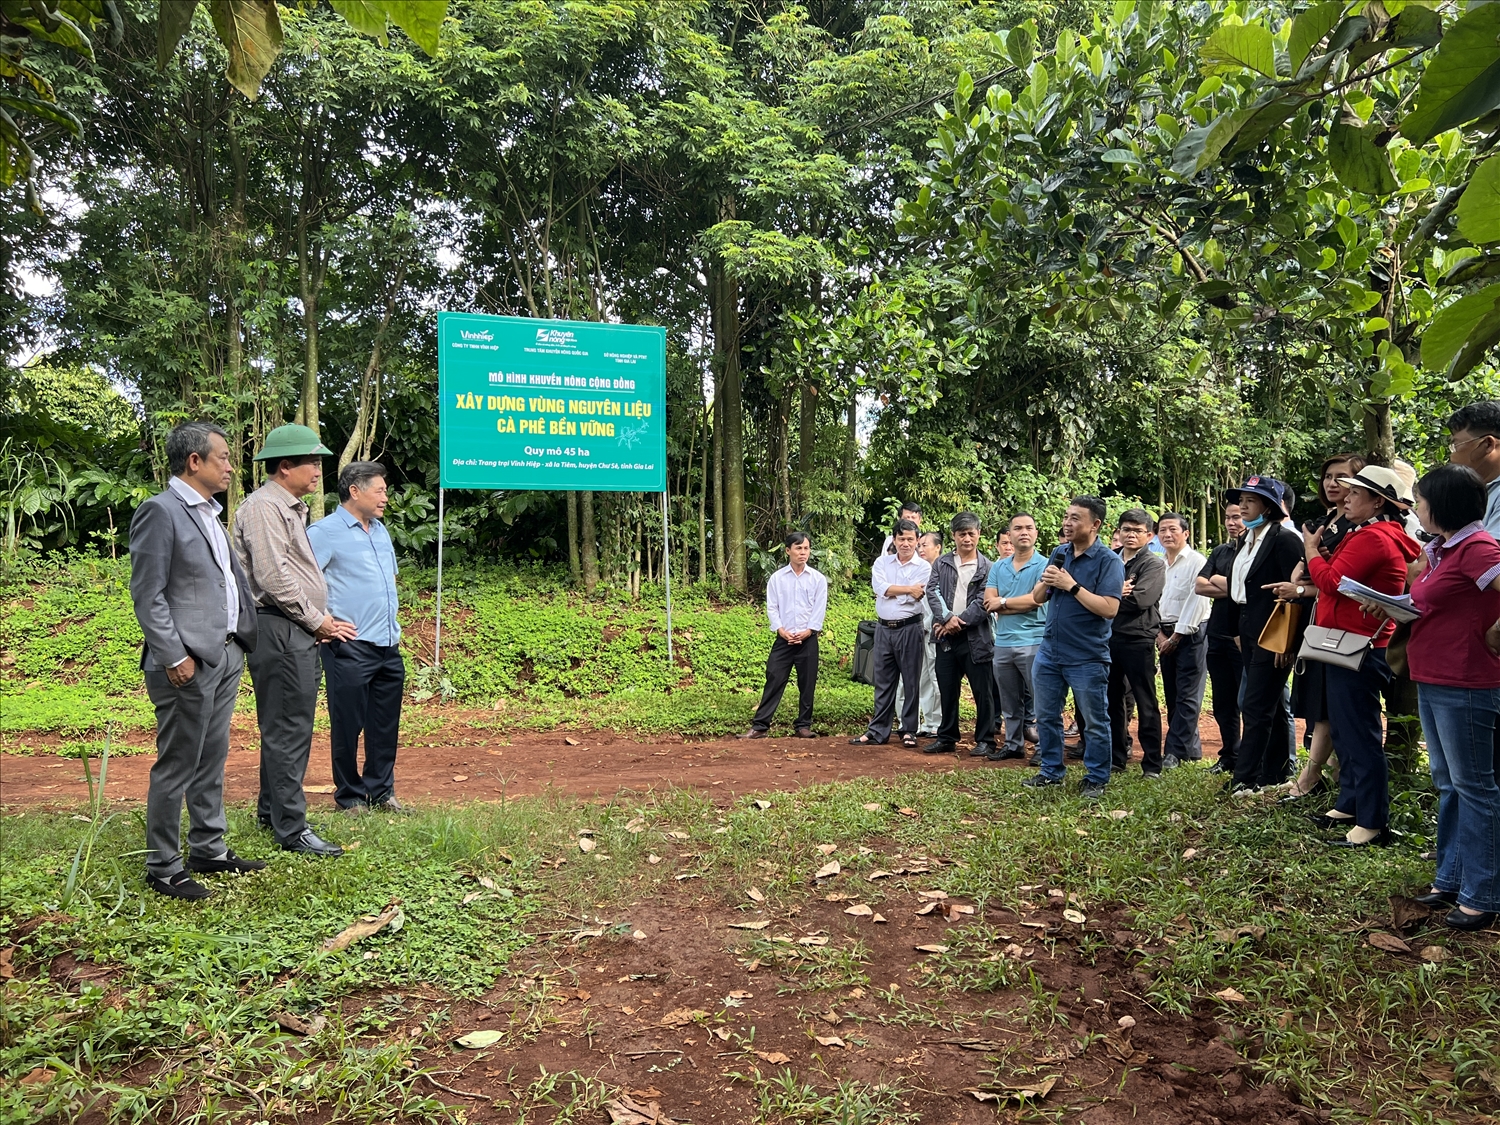 Hơn 60 chuyên gia, nhà quản lý, doanh nghiệp, cán bộ khuyến nông đến từ 4 tỉnh Gia Lai, Kon Tum, Đắk Lắk và Đk Nông tham quan các mô hình nông nghiệp tại Gia Lai.